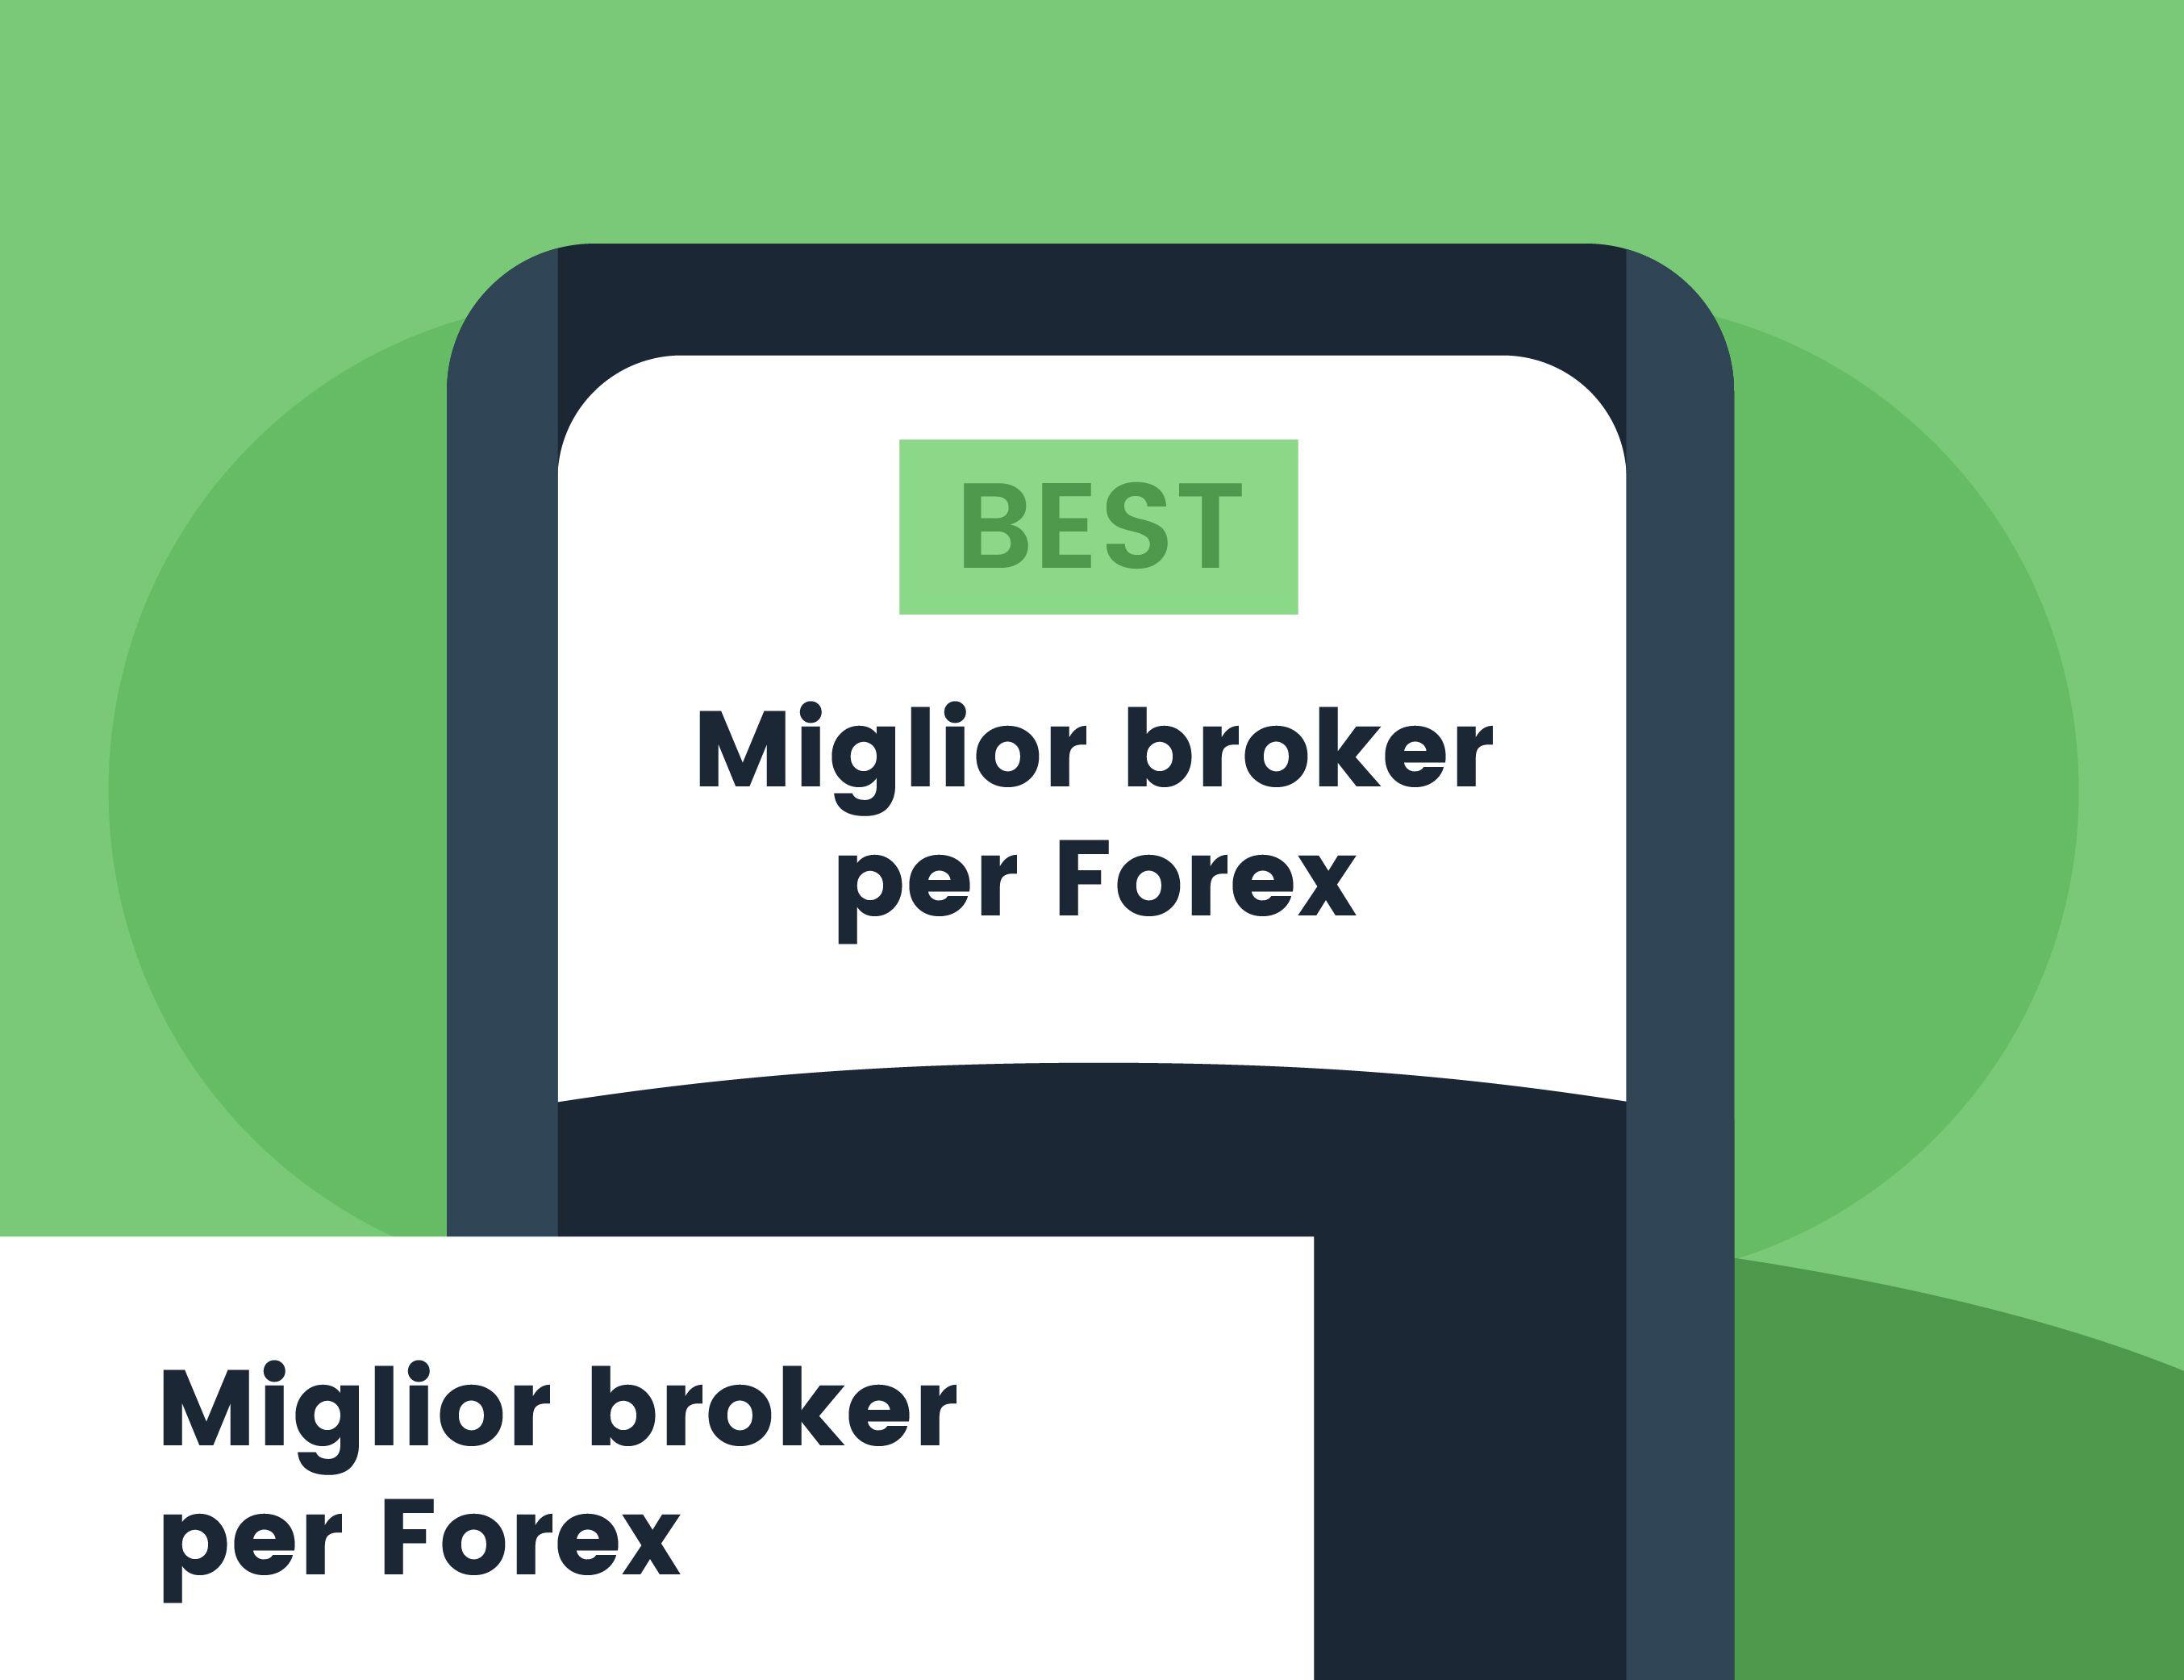 Miglior broker per Forex